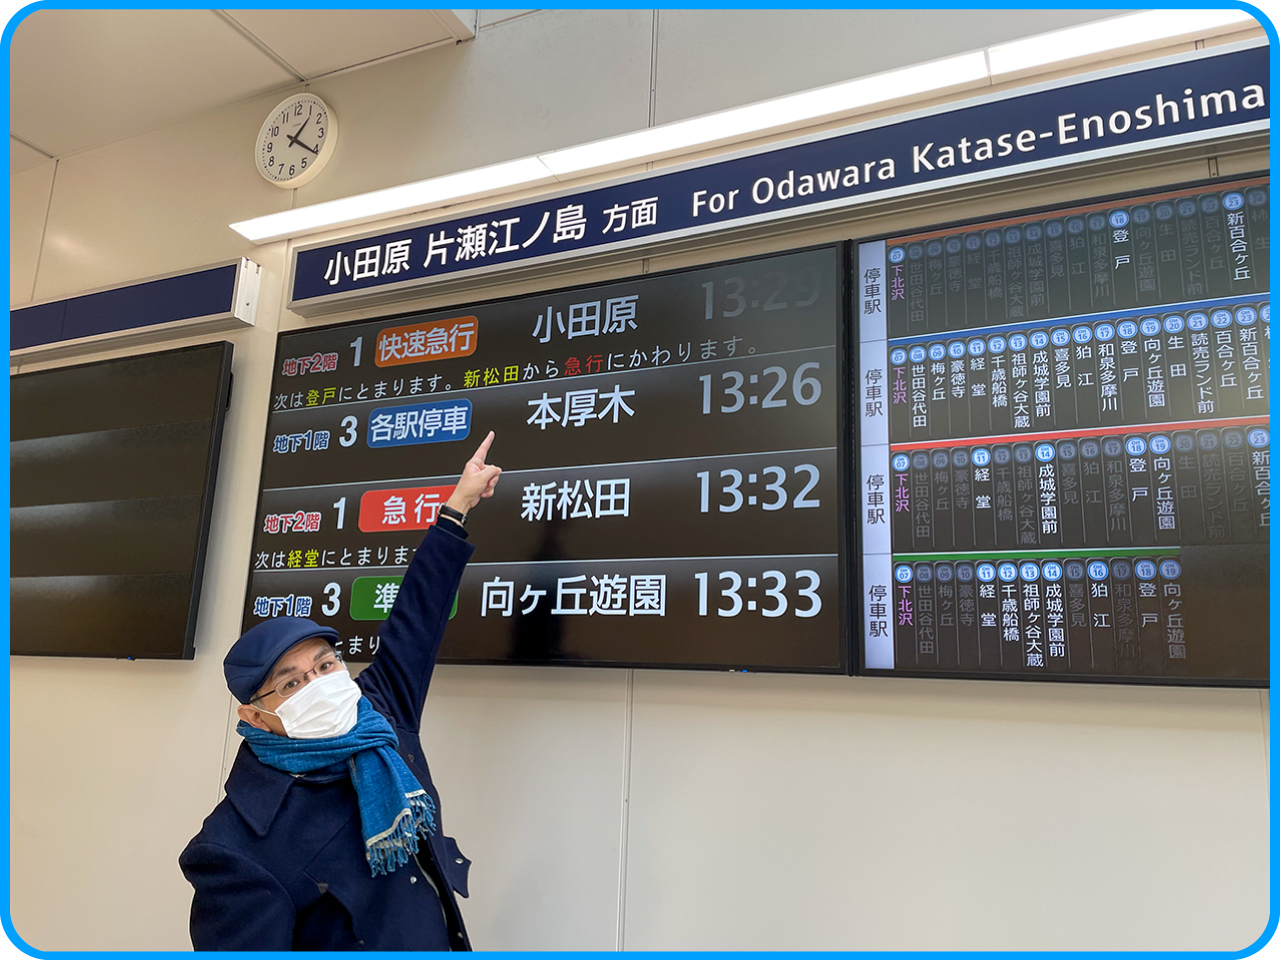 ▲「小田原　片瀬江ノ島方面」に向かいます。
下北沢の駅は「深い」です。
乗る電車によって階層がちがうのでご注意ください。